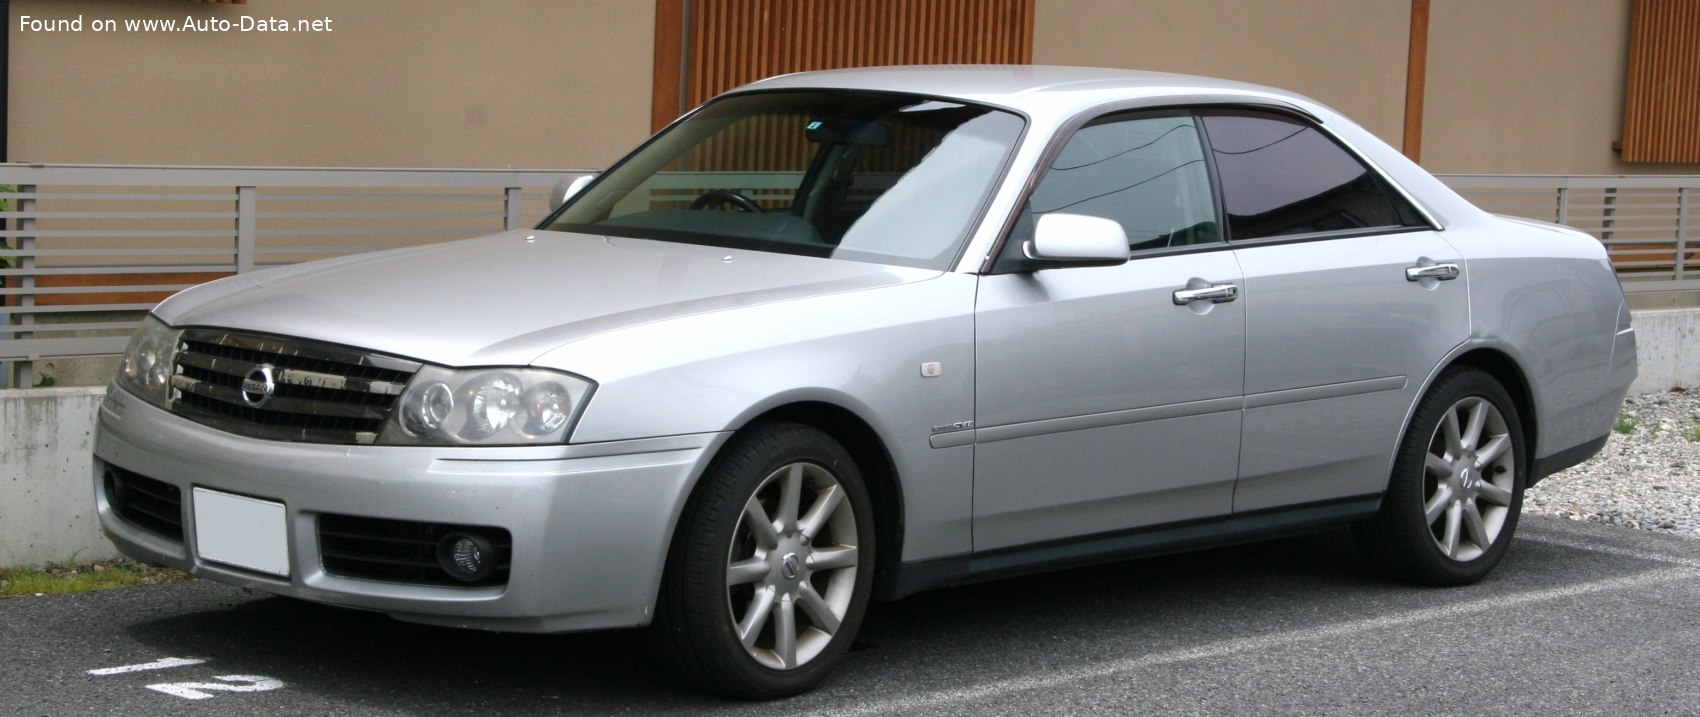 1999 Nissan Gloria (Y34) 3.0 i V6 24V (240 Hp) | Technical specs, data